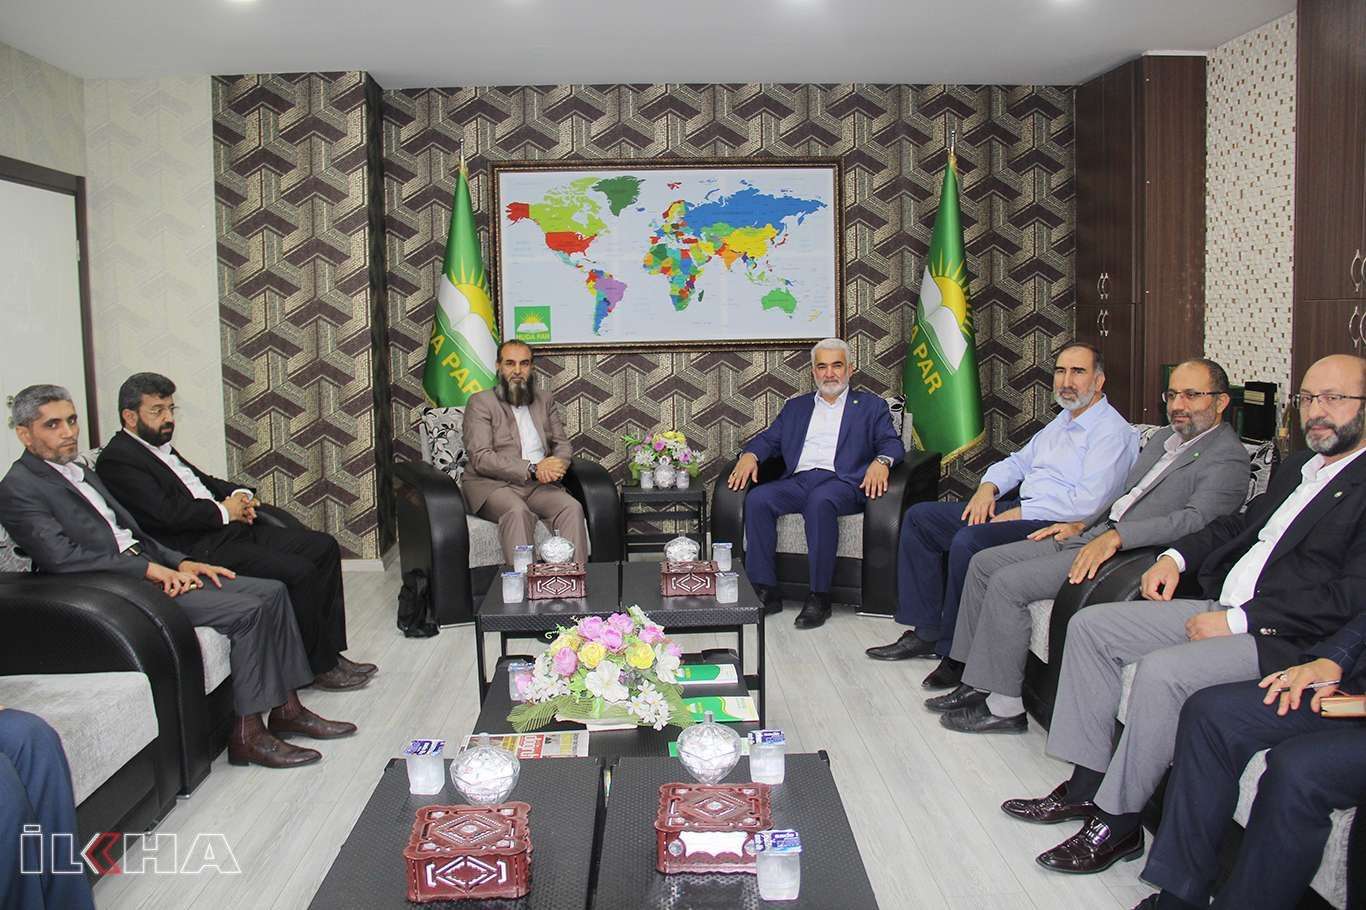  الحركة الإسلامية في كردستان يزور رئيس حزب الهدى يابجي أوغلو